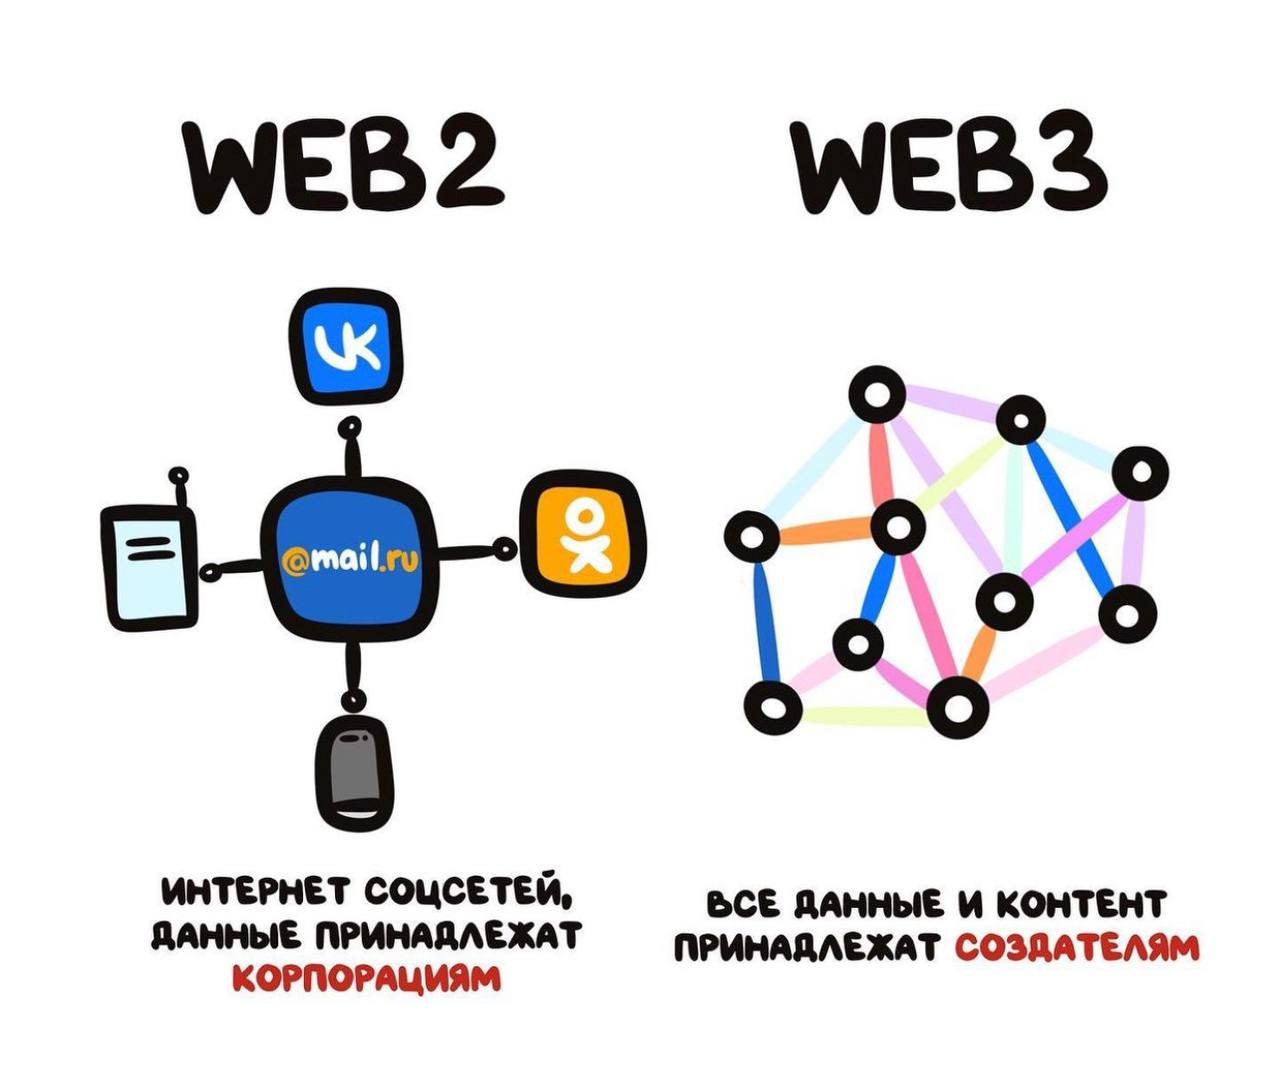 Web 3.0 - Web3 - децентрализованный интернет